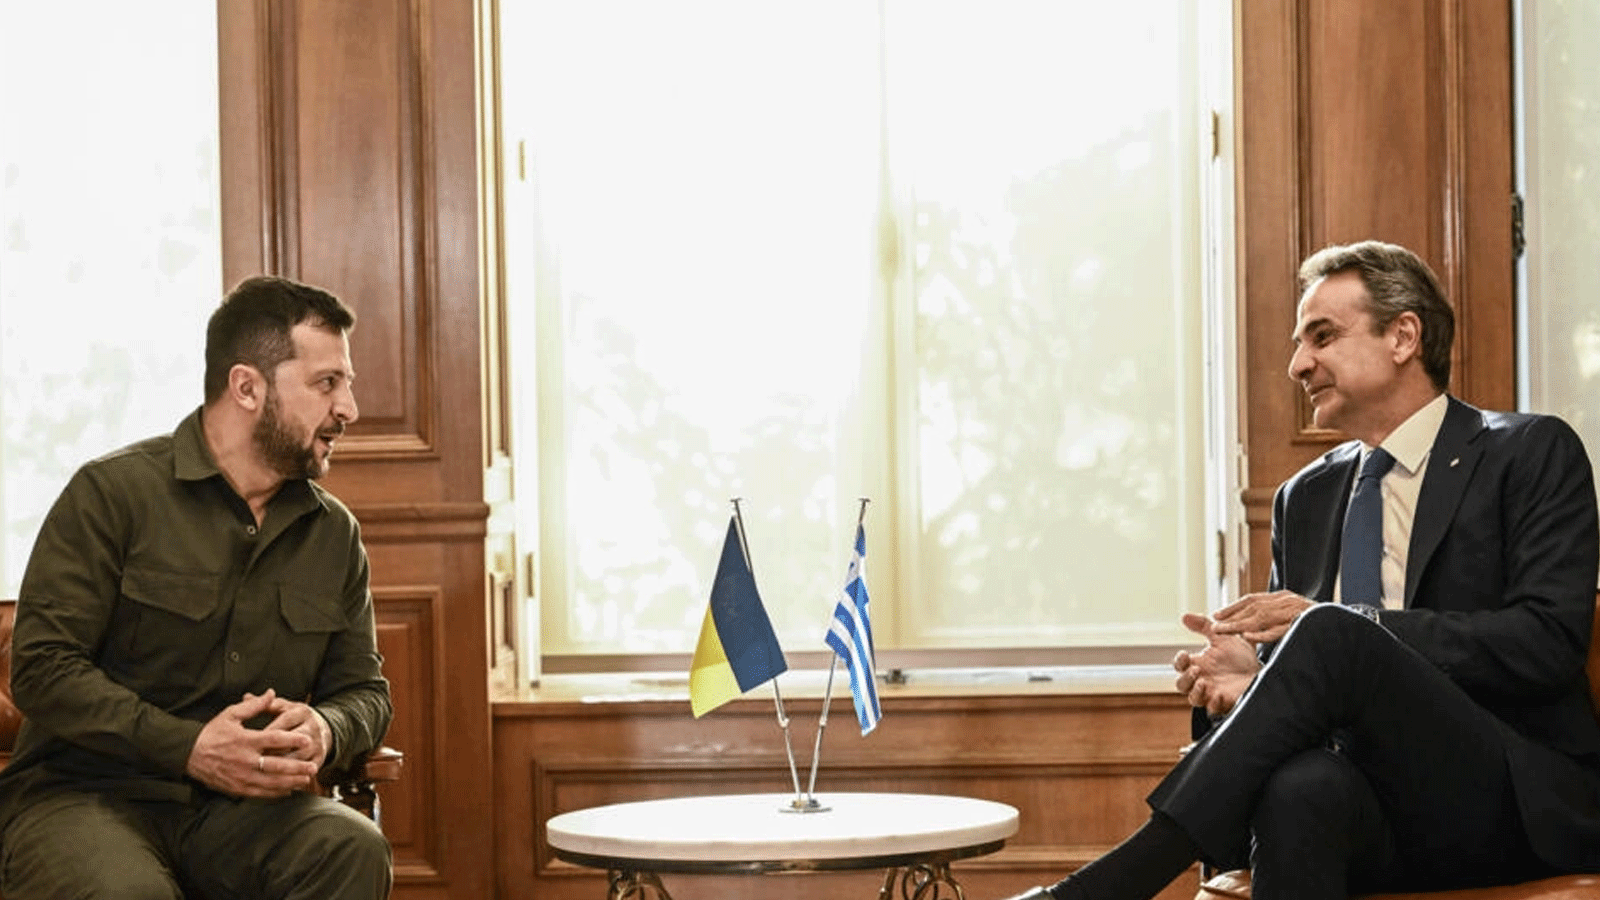 رئيس الوزراء اليوناني كيرياكوس ميتسوتاكيس يلتقي بالرئيس الأوكراني فولوديمير زيلينسكي في قصر ماكسيموس\ أثينا